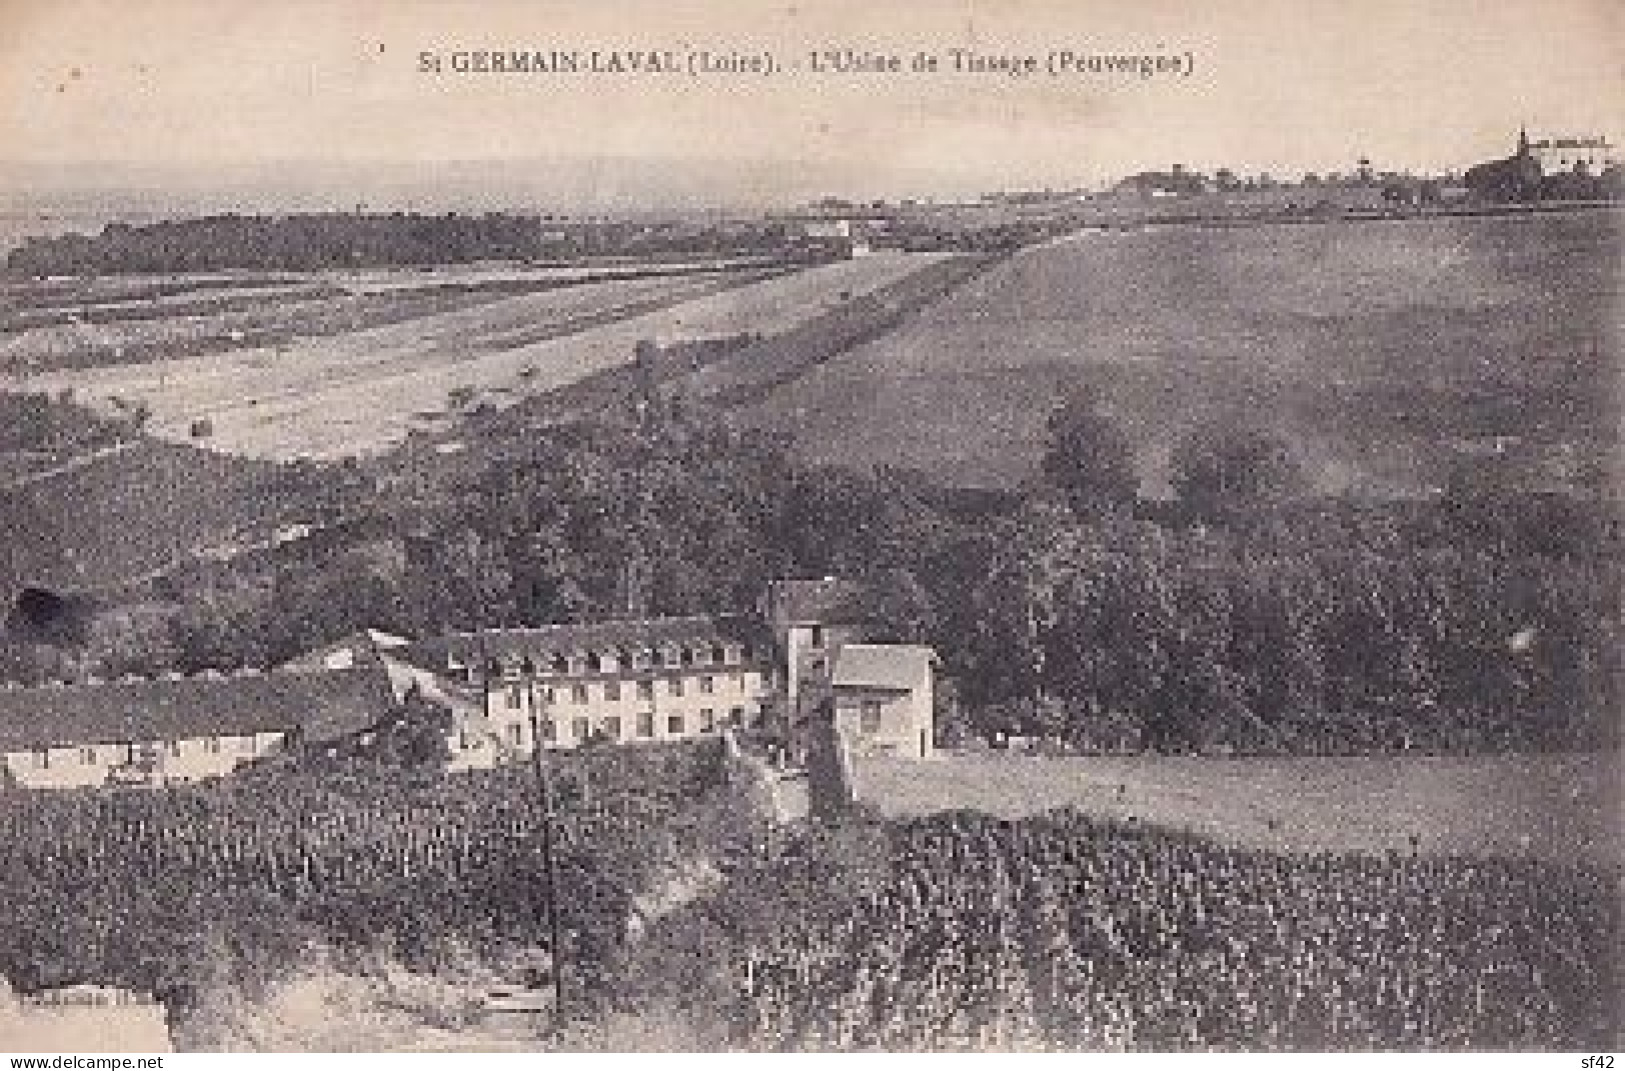 SAINT GERMAIN LAVAL             USINE DE TISSAGE PEUVERGNE   PP - Saint Germain Laval